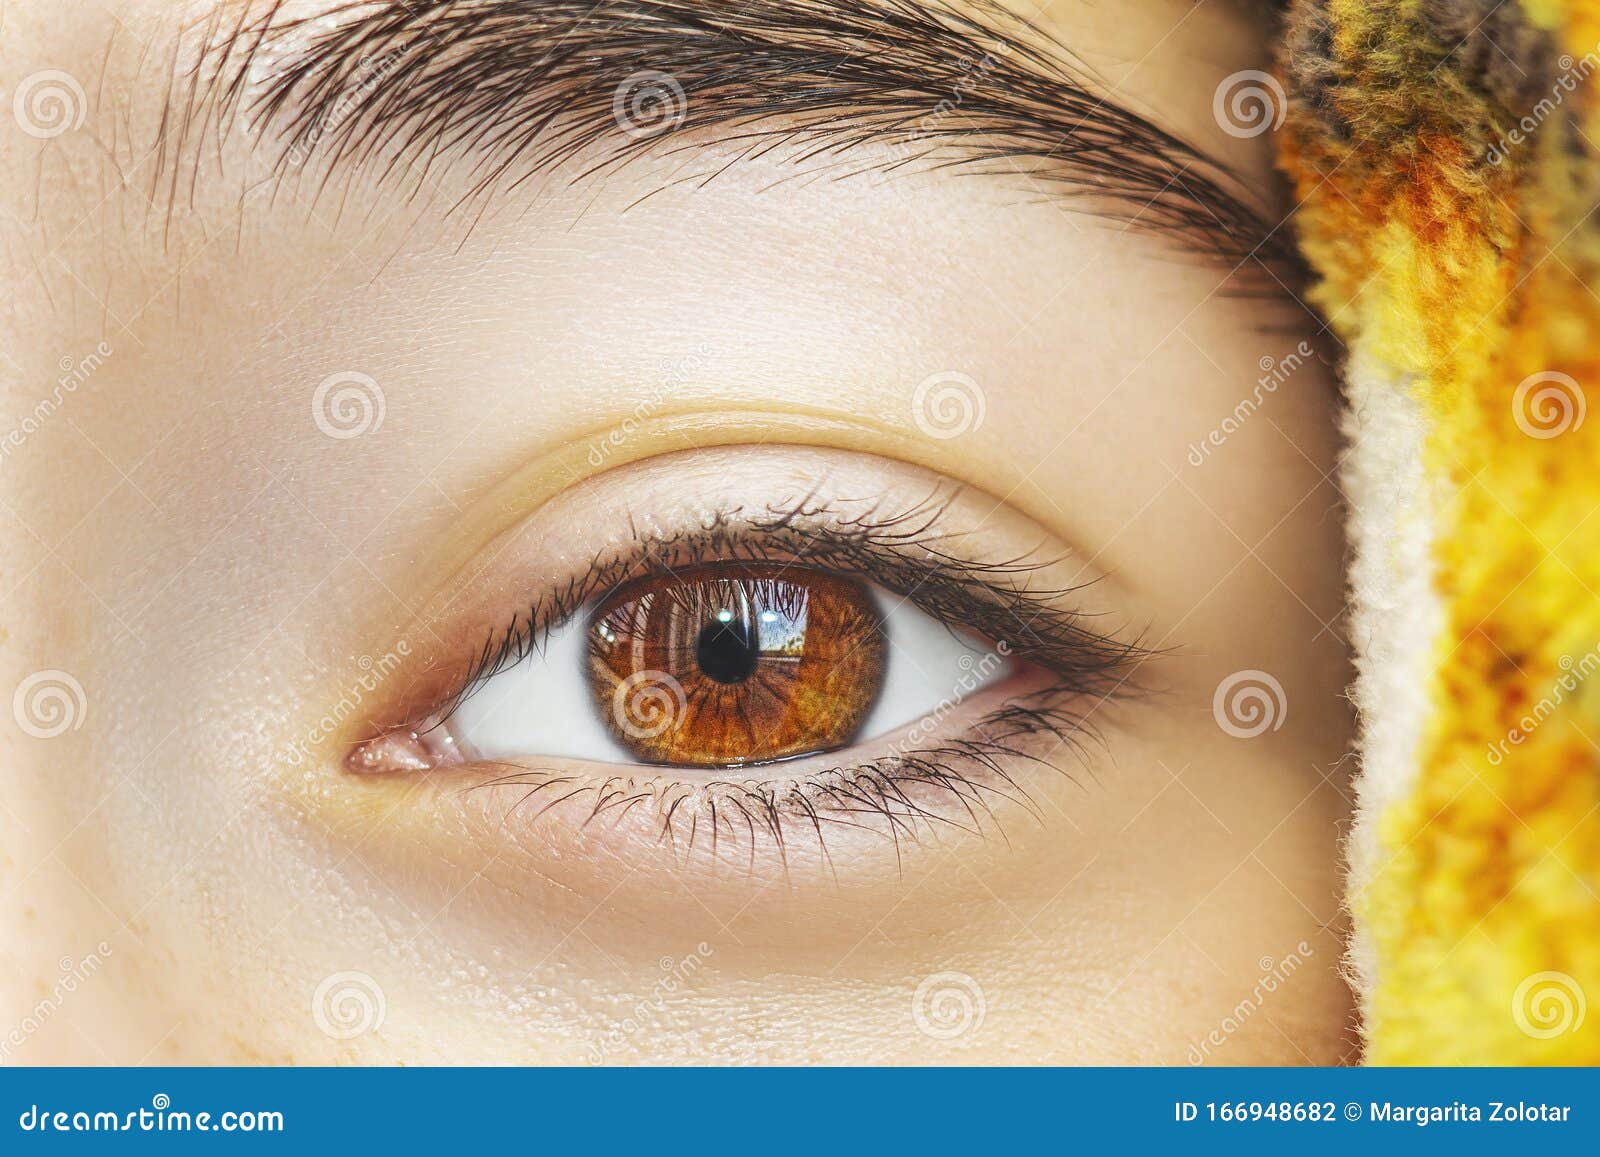 yellow eyes human natural